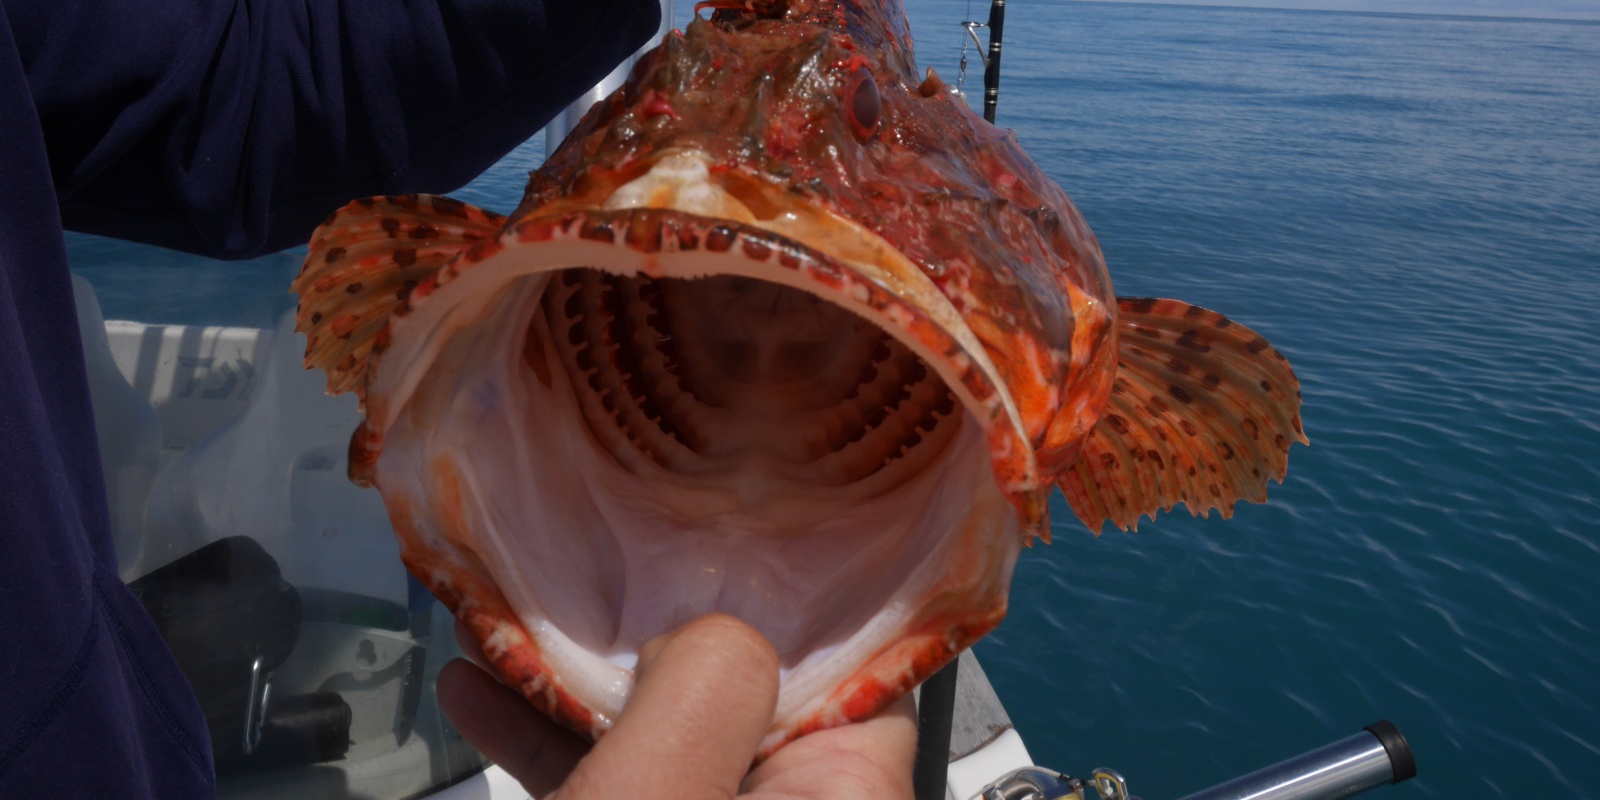 Quand on voit la largeur de la gueule d’un chapon, on comprend que des hameçons de bonnes tailles sont préconisés pour les pêches profondes